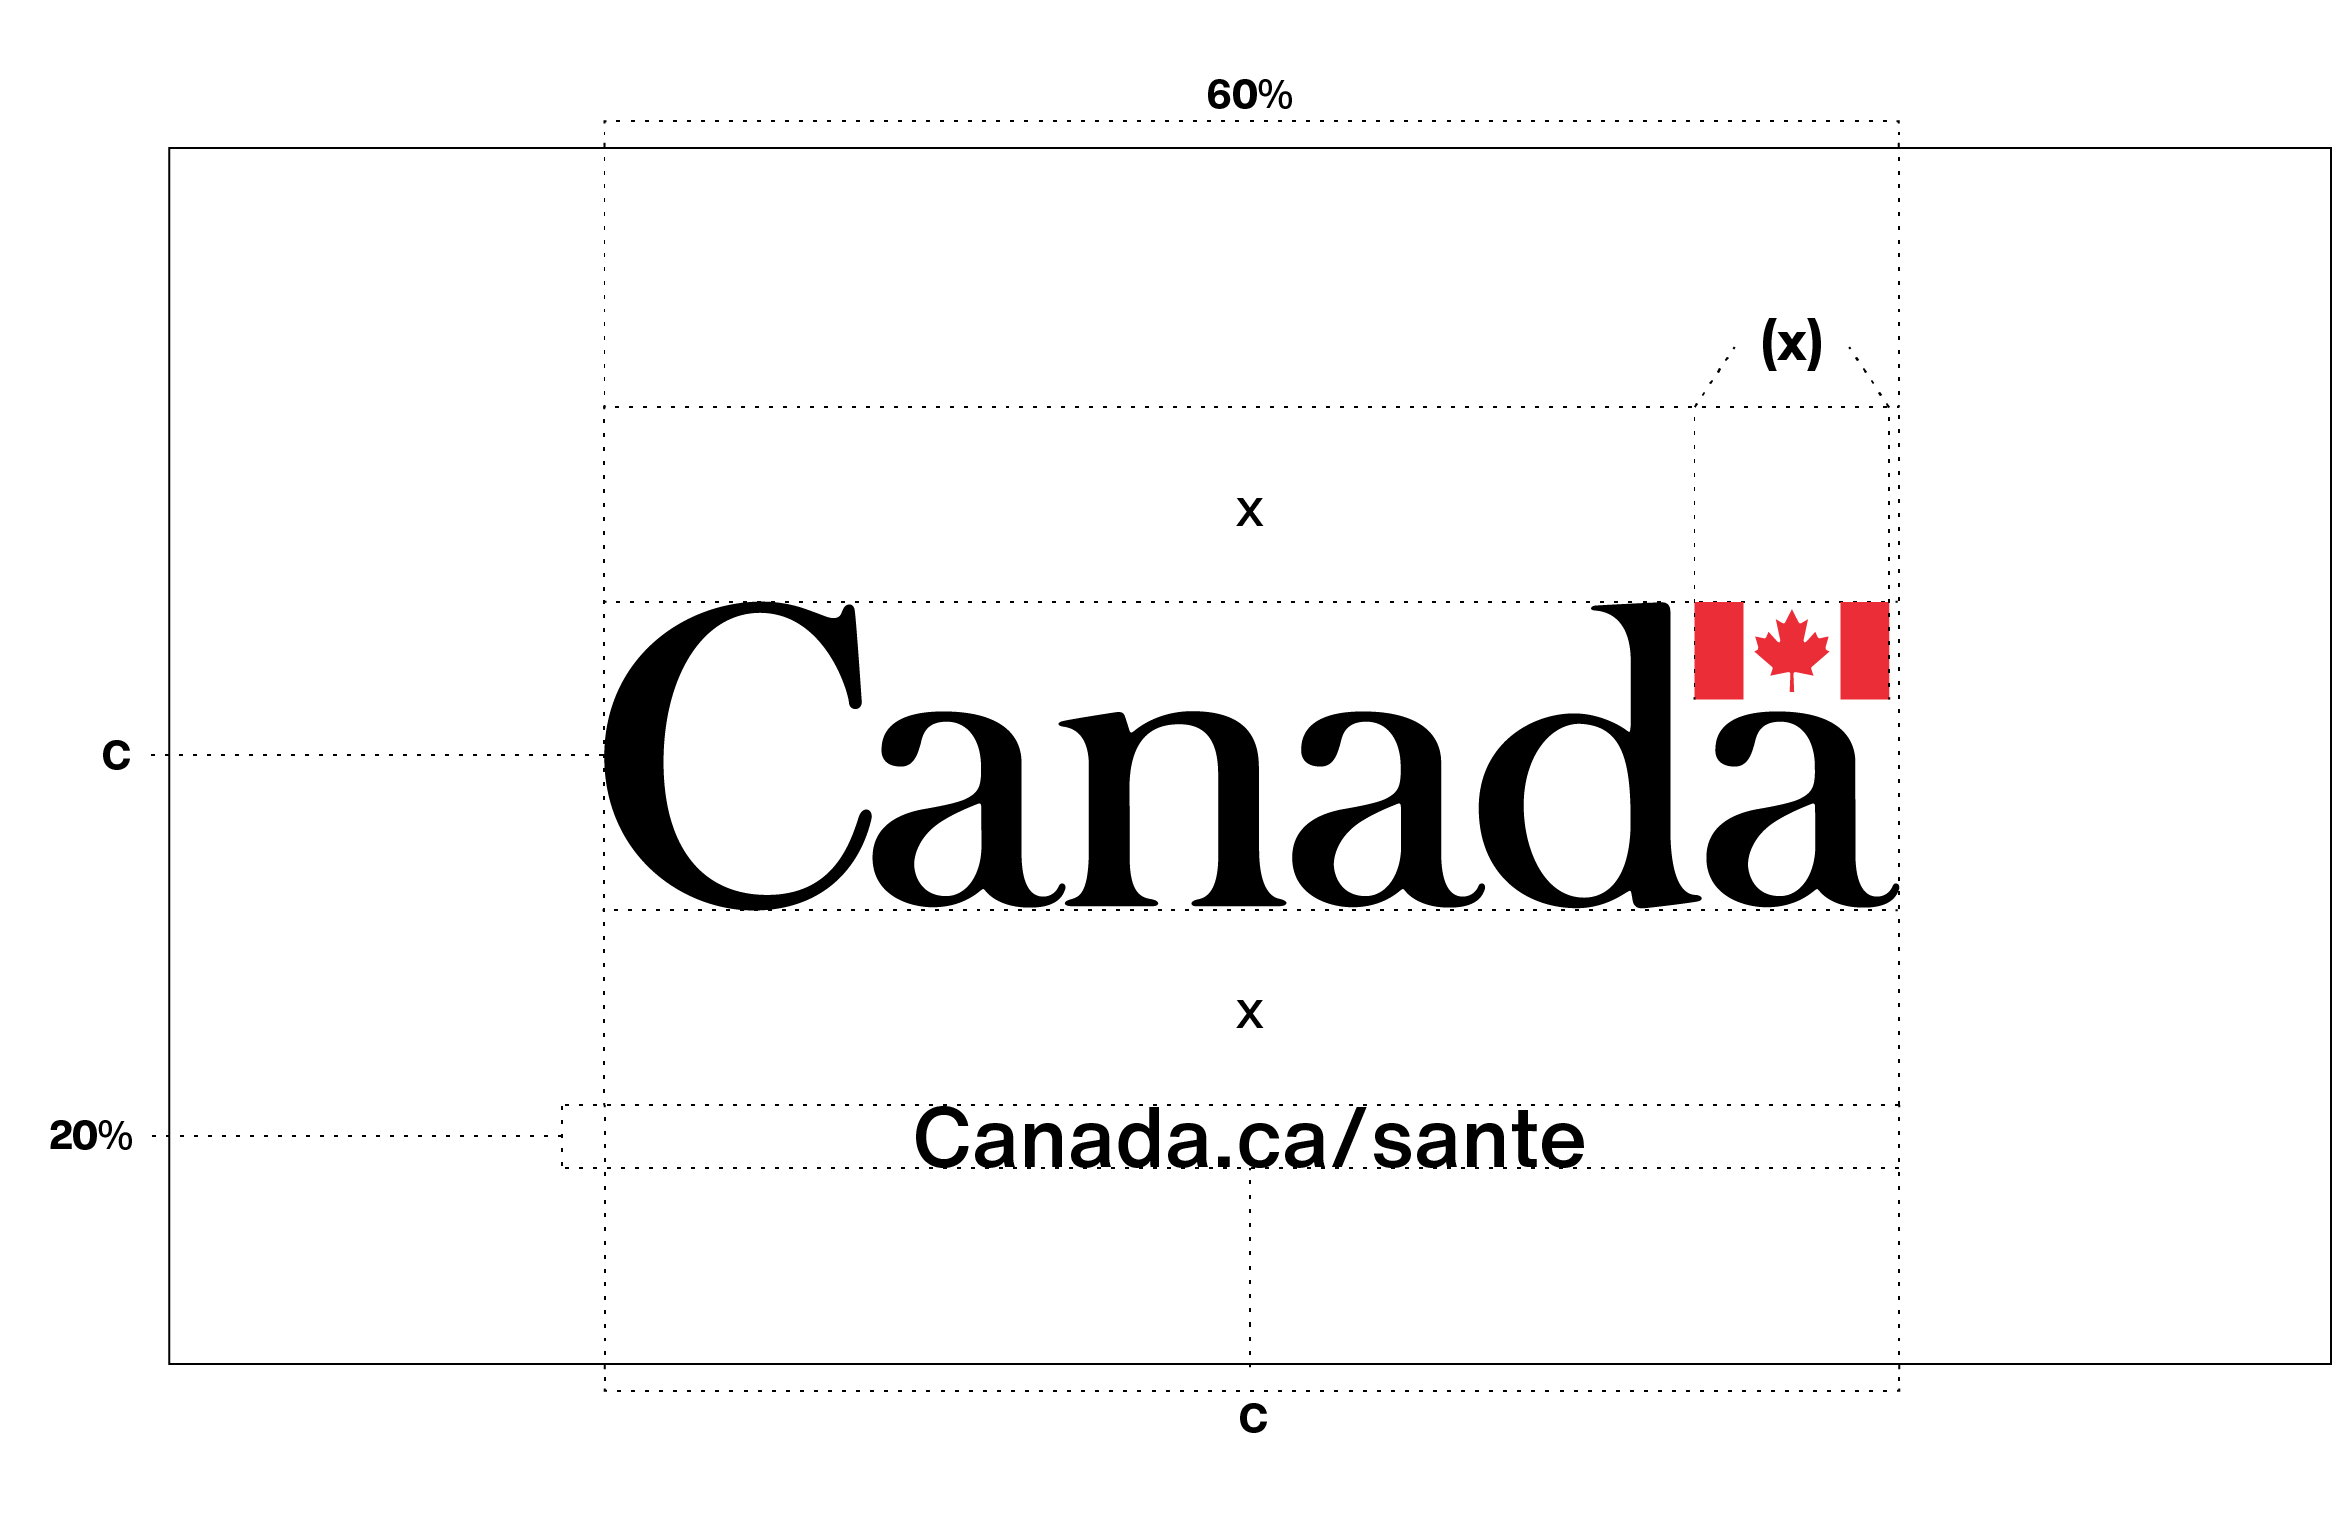 Exigences en matière de placement du mot-symbole « Canada » avec un message supplémentaire (en l’occurrence, une URL) au dernier écran d’une vidéo, comme l’explique le texte ci-dessus.